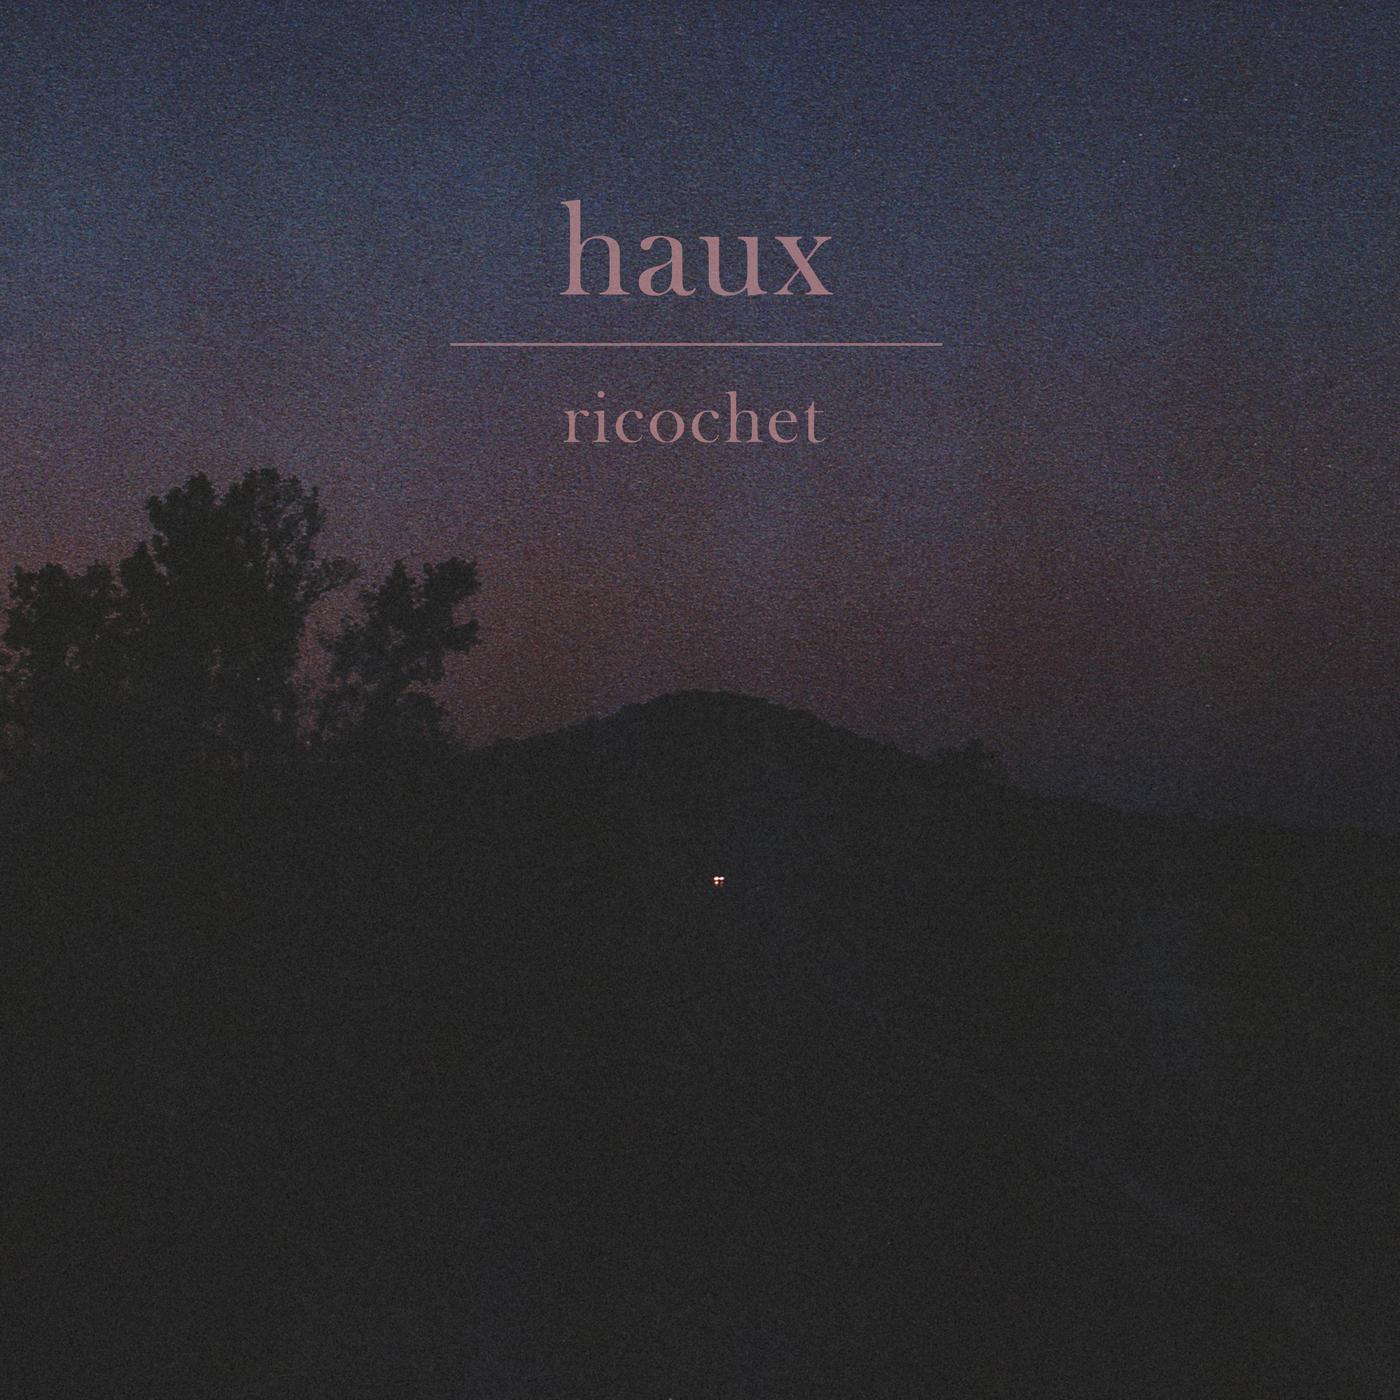 Ricochet歌词 歌手Haux-专辑Ricochet-单曲《Ricochet》LRC歌词下载